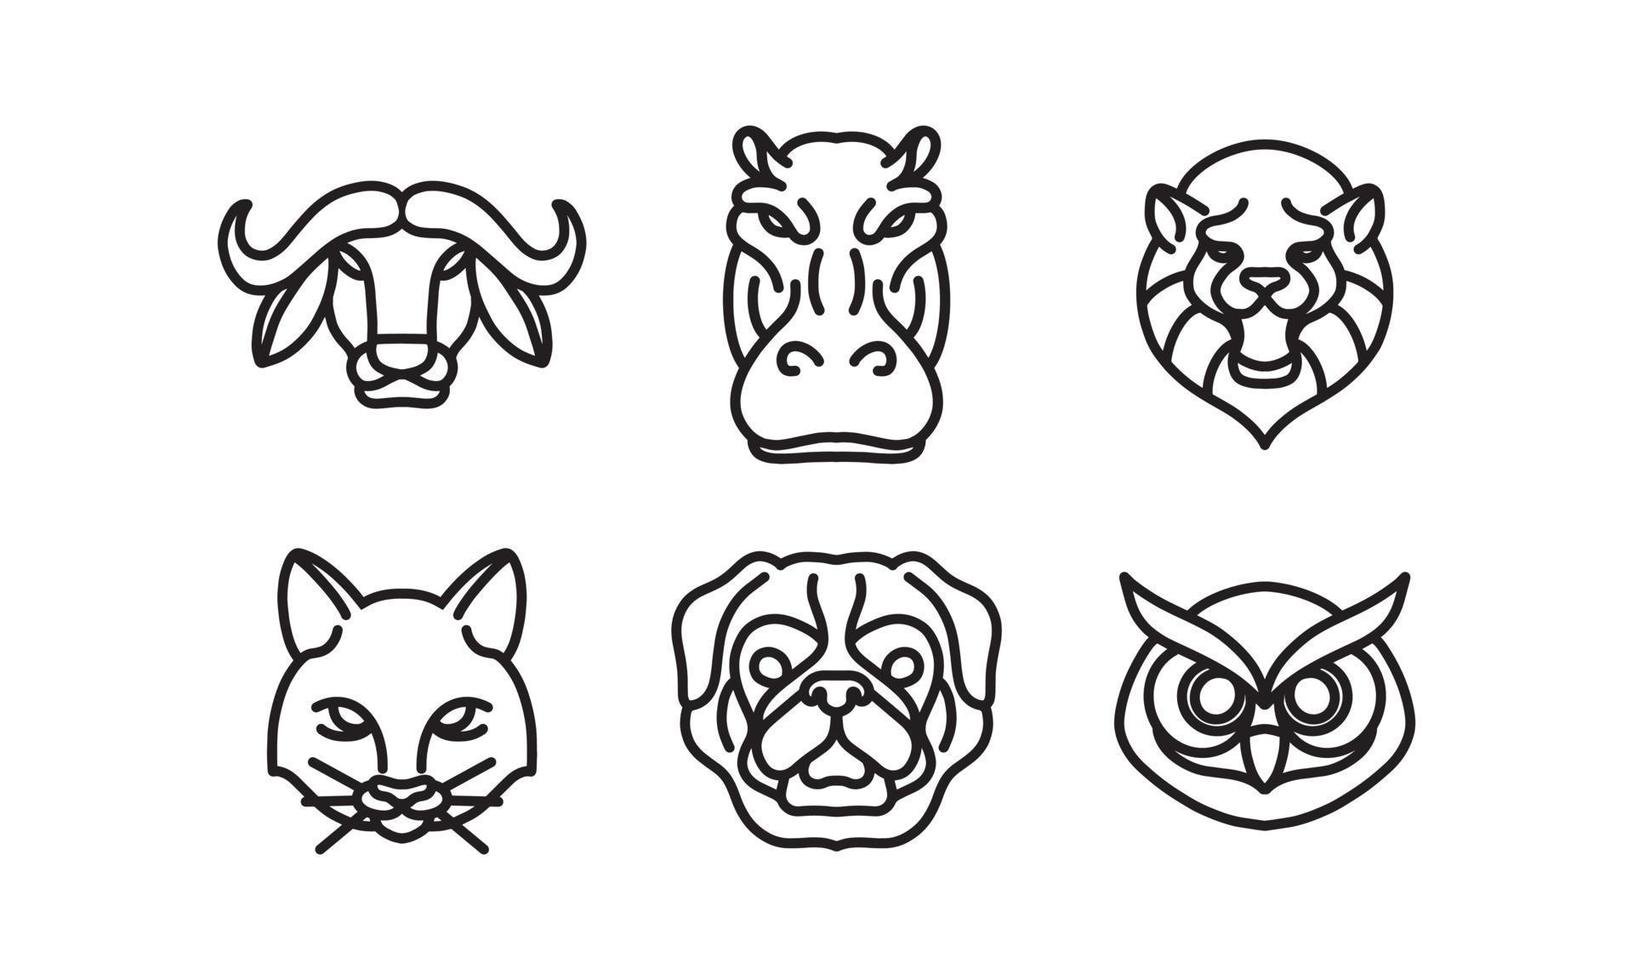 ensemble de 6 têtes d'animaux sauvages, icône de ligne de vecteur d'animal, dessin de ligne de vecteur de tête d'animal, illustration d'animal isolé